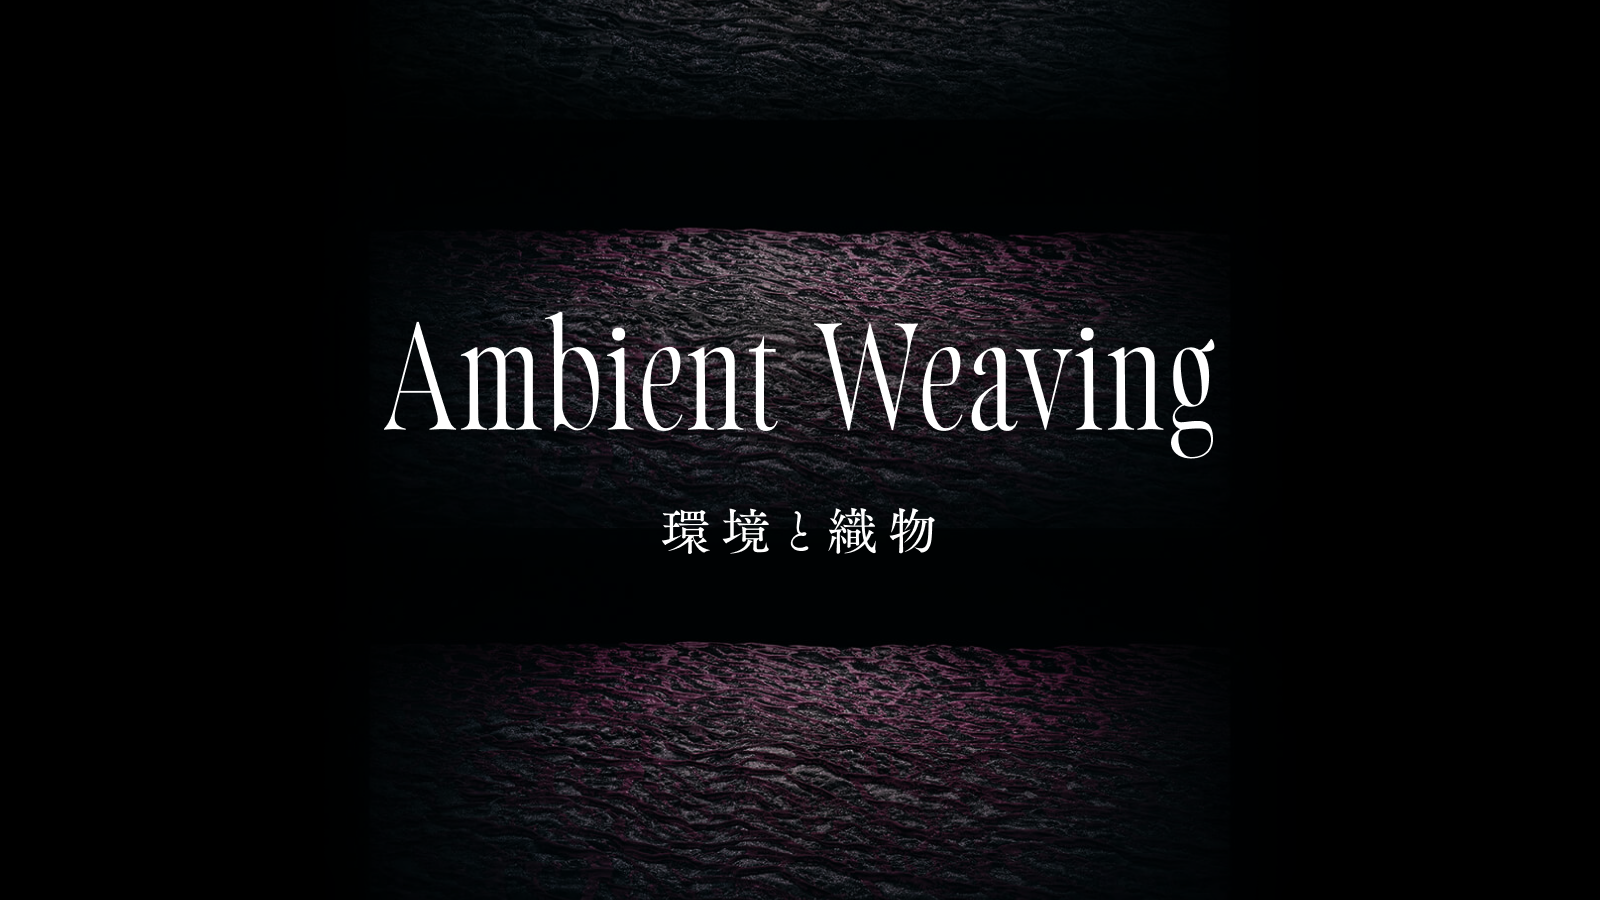 没入感のある展示空間を再現した             “Ambient Weaving ── 環境と織物”バーチャル展示会サイトを公開